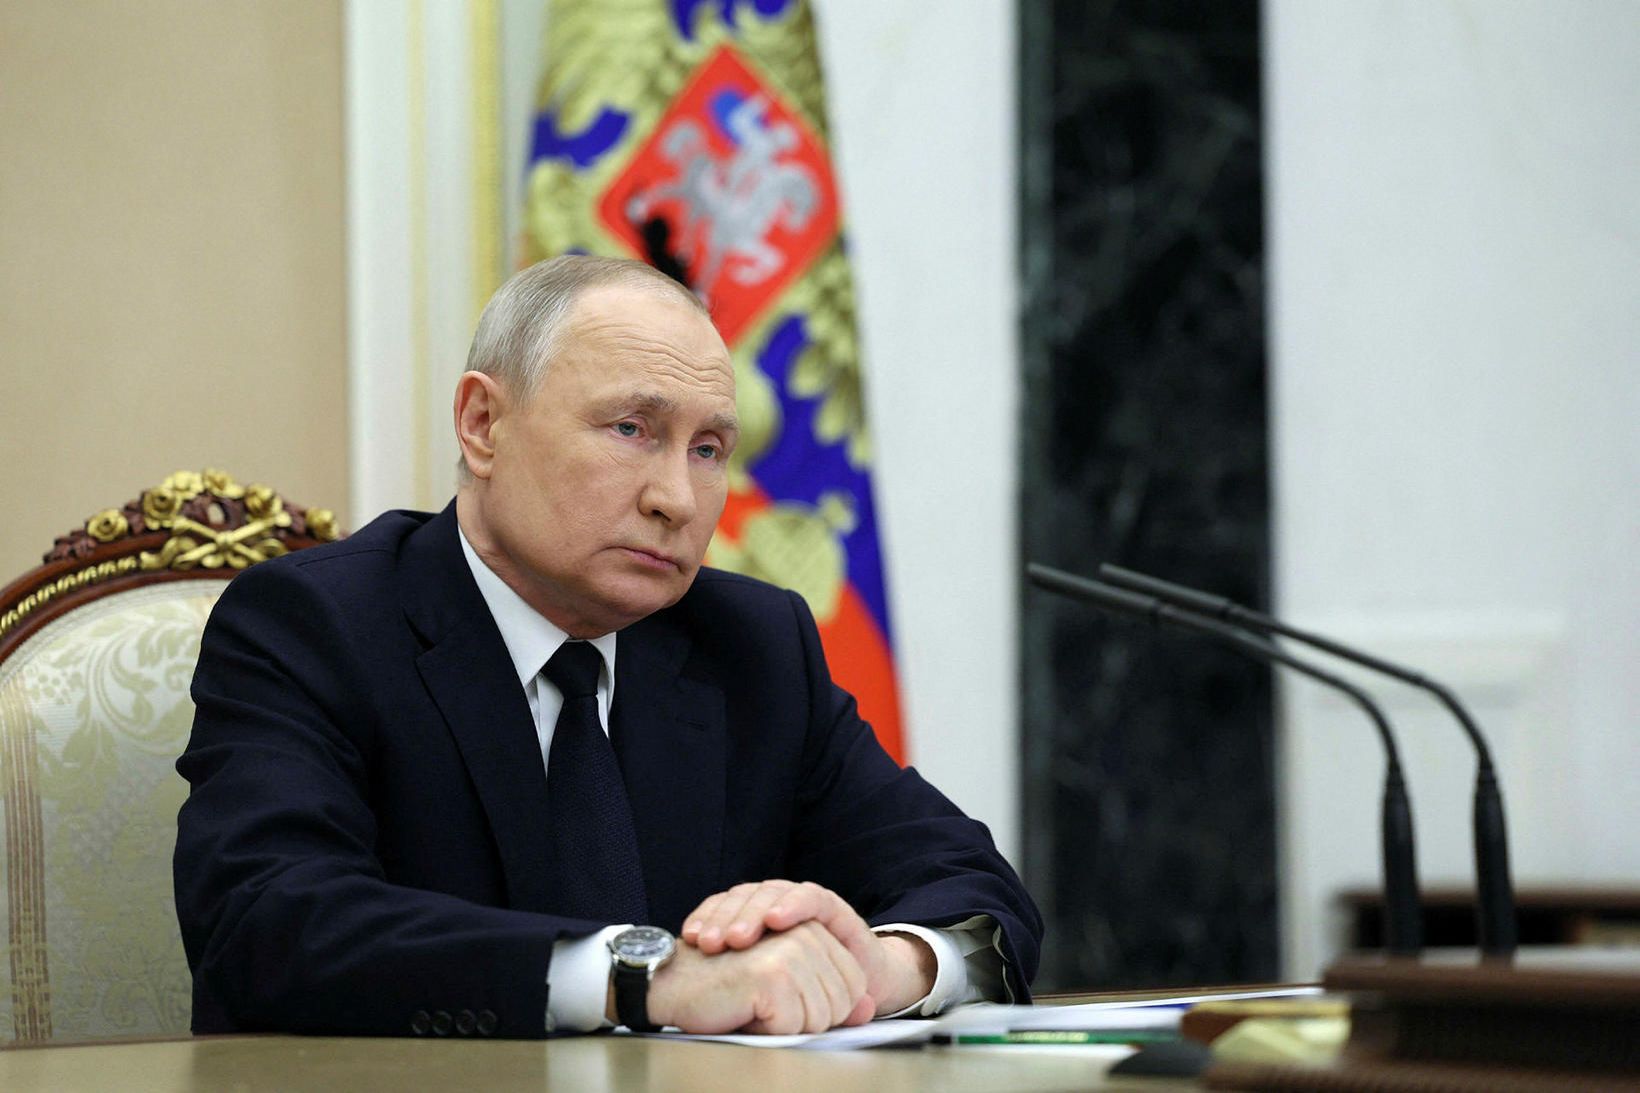 Vladimír Pútín á fundi í Kreml í dag.